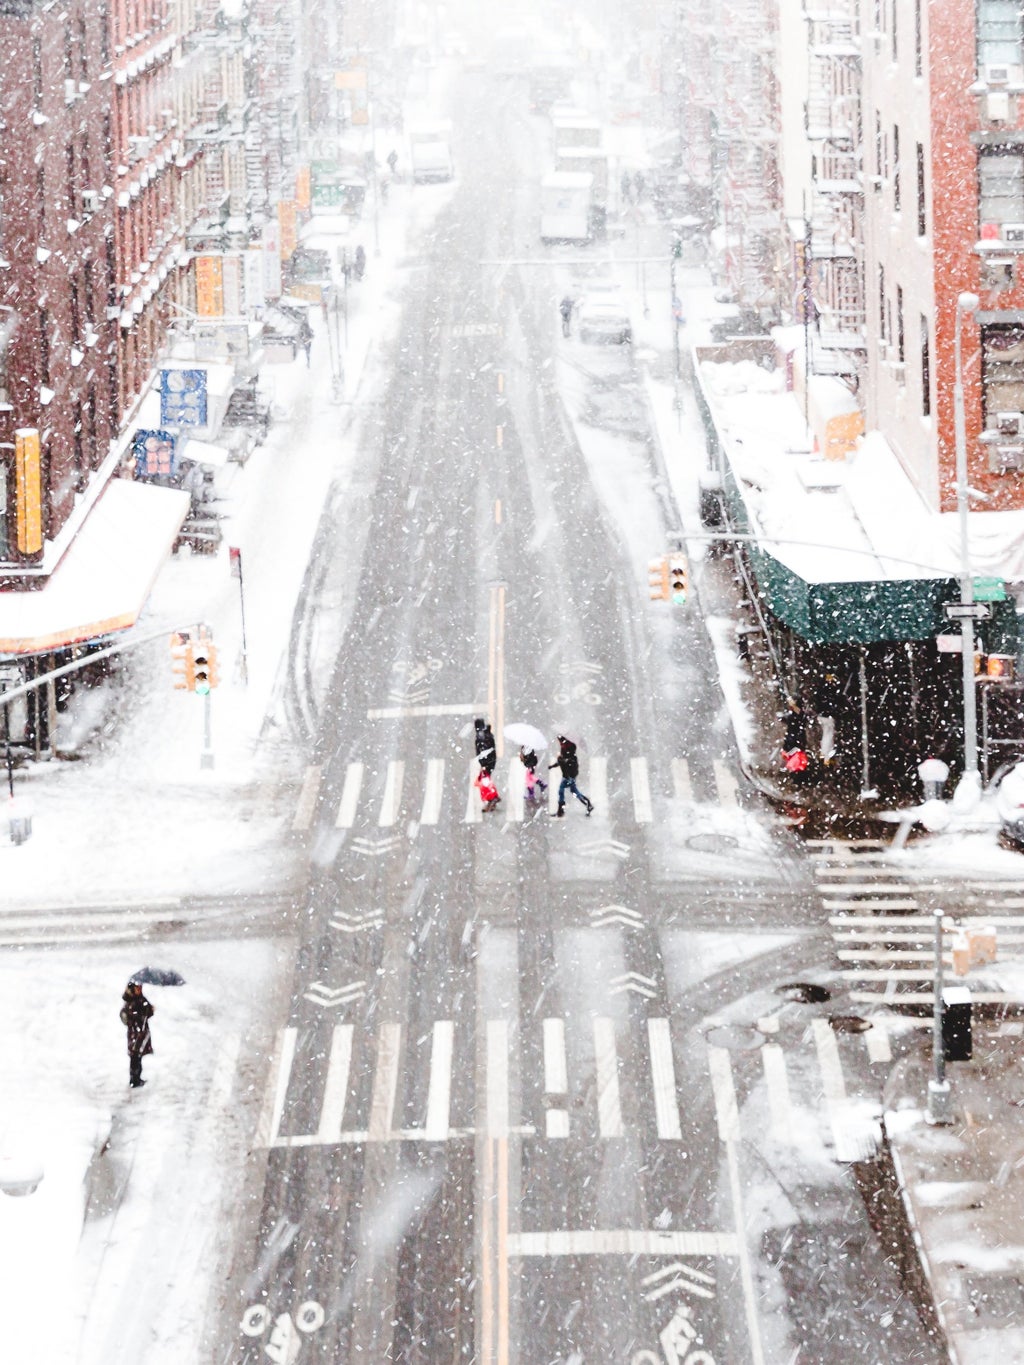 Snowy city with people walking in crosswalk